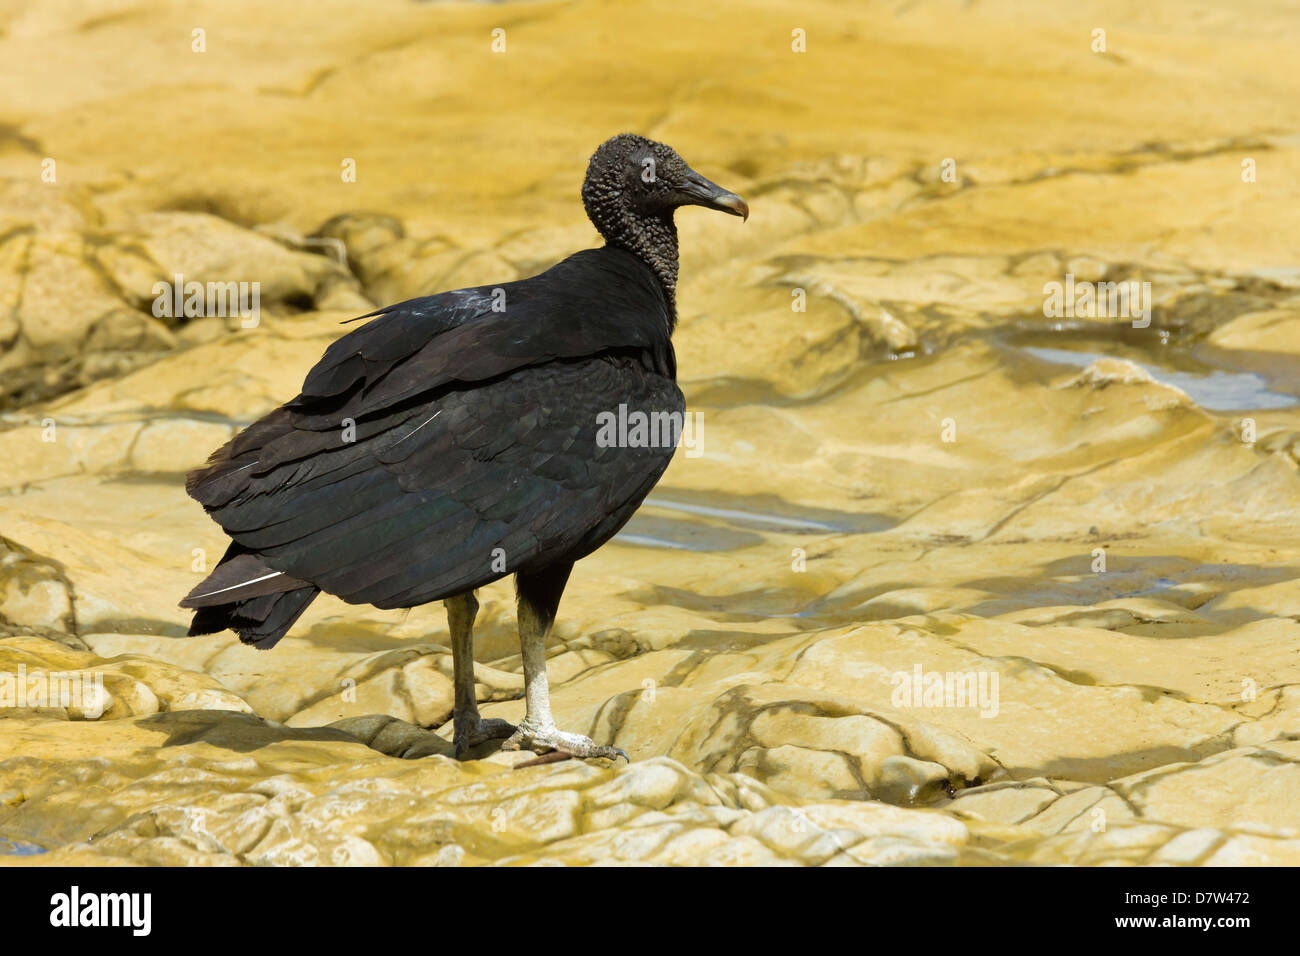 Sud Americana avvoltoio nero, un comune scavenger, in corrispondenza di una bocca di fiume; Nosara, Nicoya peninsula, provincia di Guanacaste, Costa Rica Foto Stock